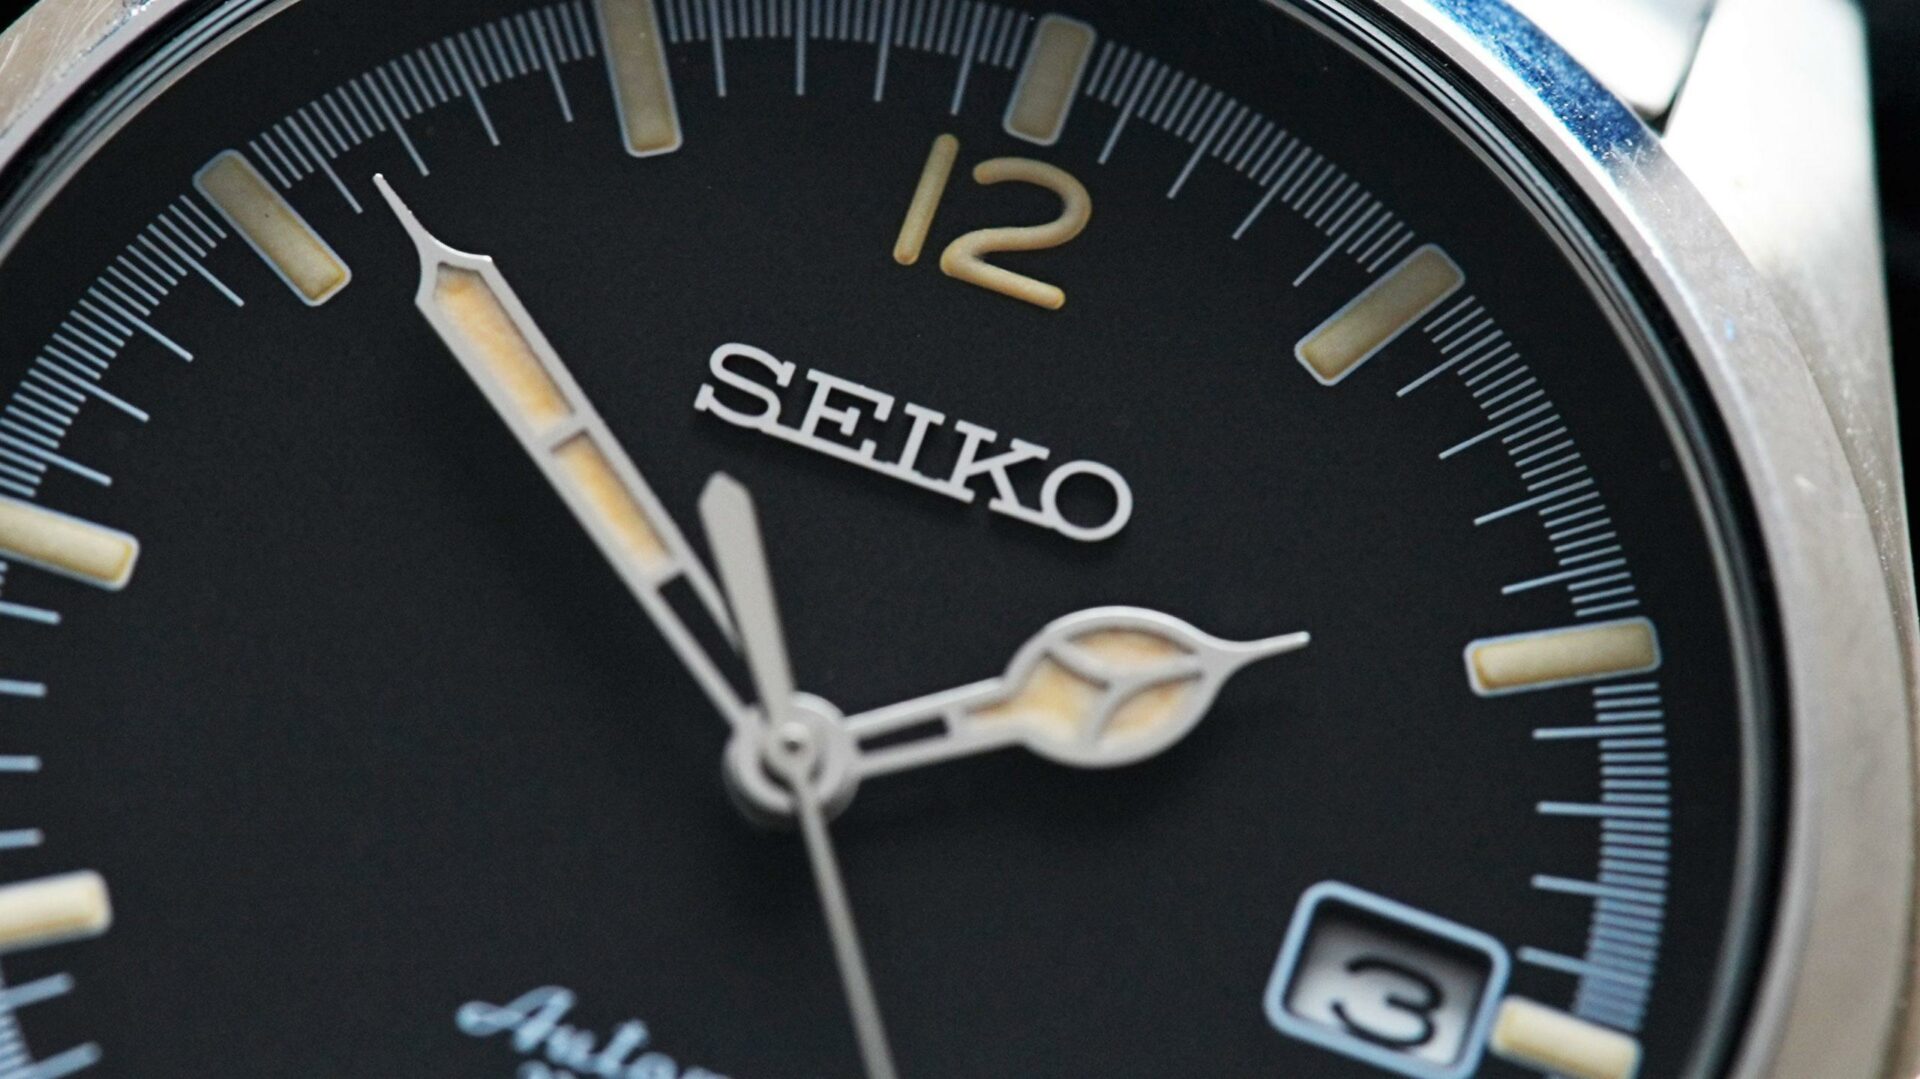 Seiko Explorer 1016 Limited Edition dial up close.